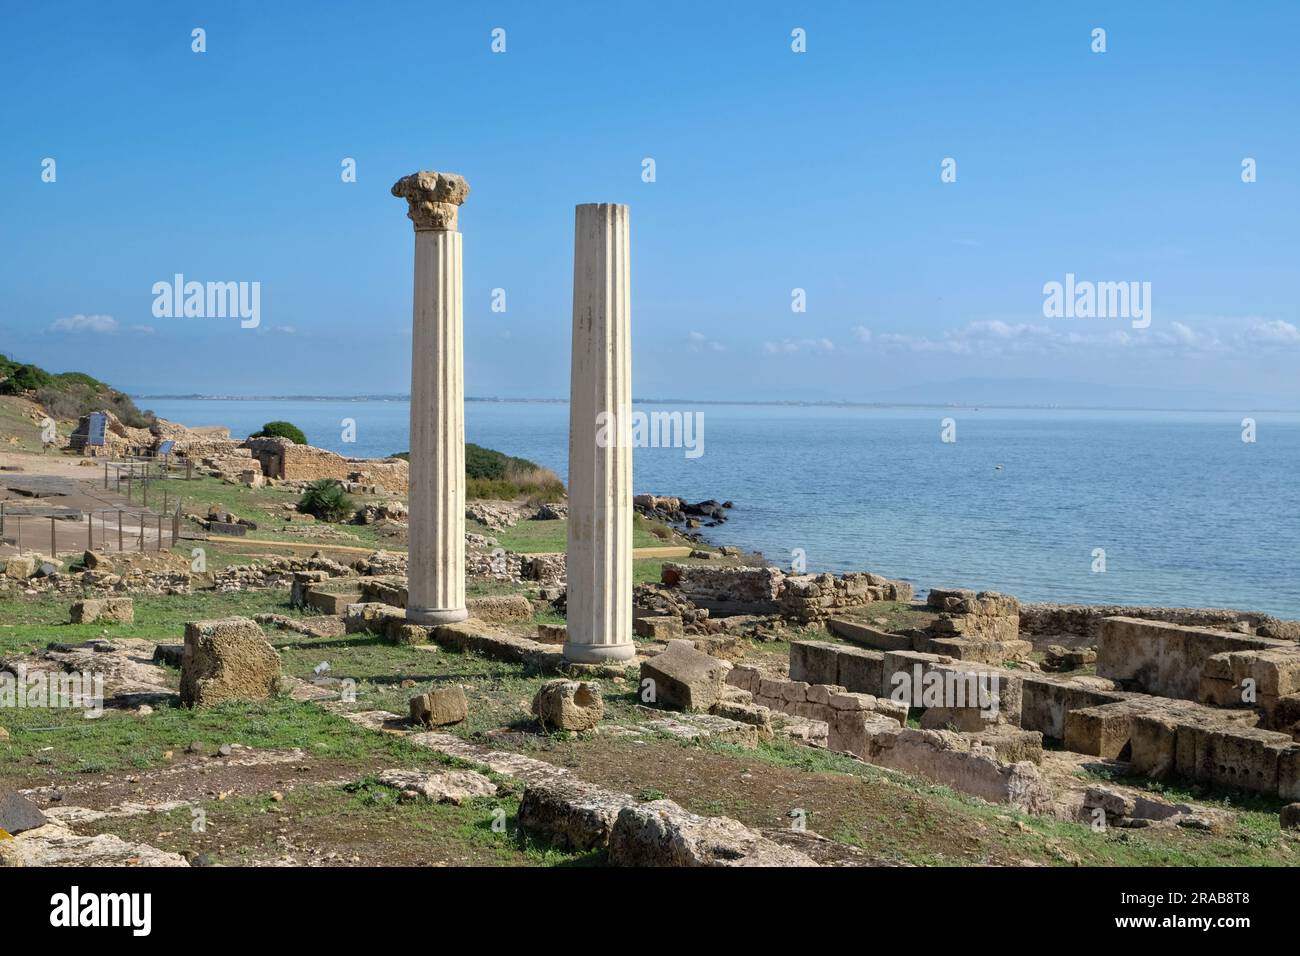 Sito archeologico di Tharros e colonne doriche di Tempio Tetrastilo con vista sul mar mediterraneo, sulla penisola del Sinis, Carbra, Sardegna, Italia Foto Stock